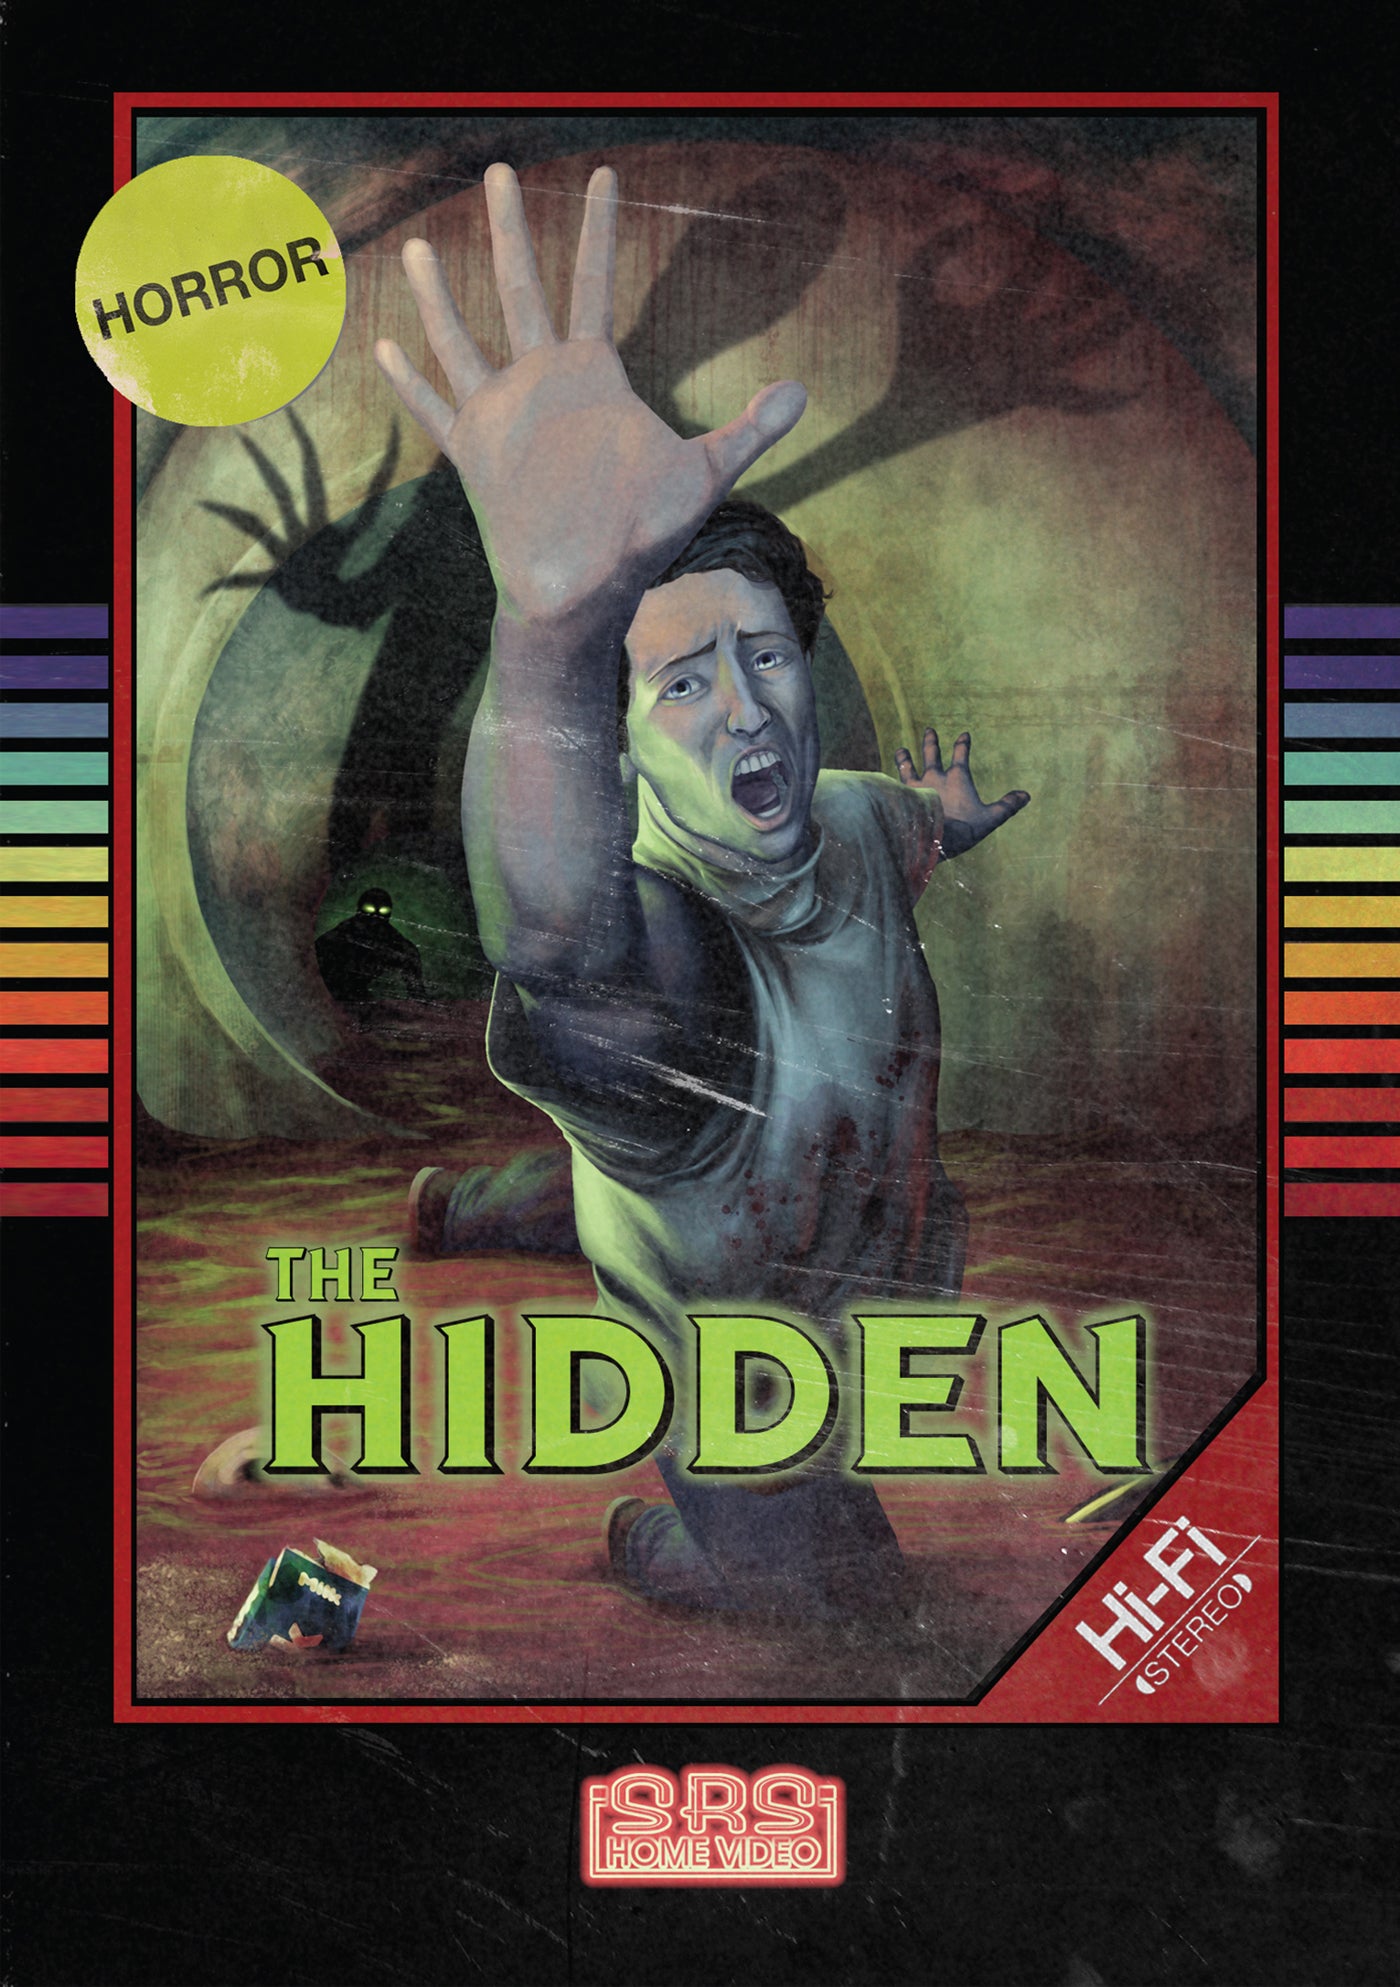 THE HIDDEN DVD